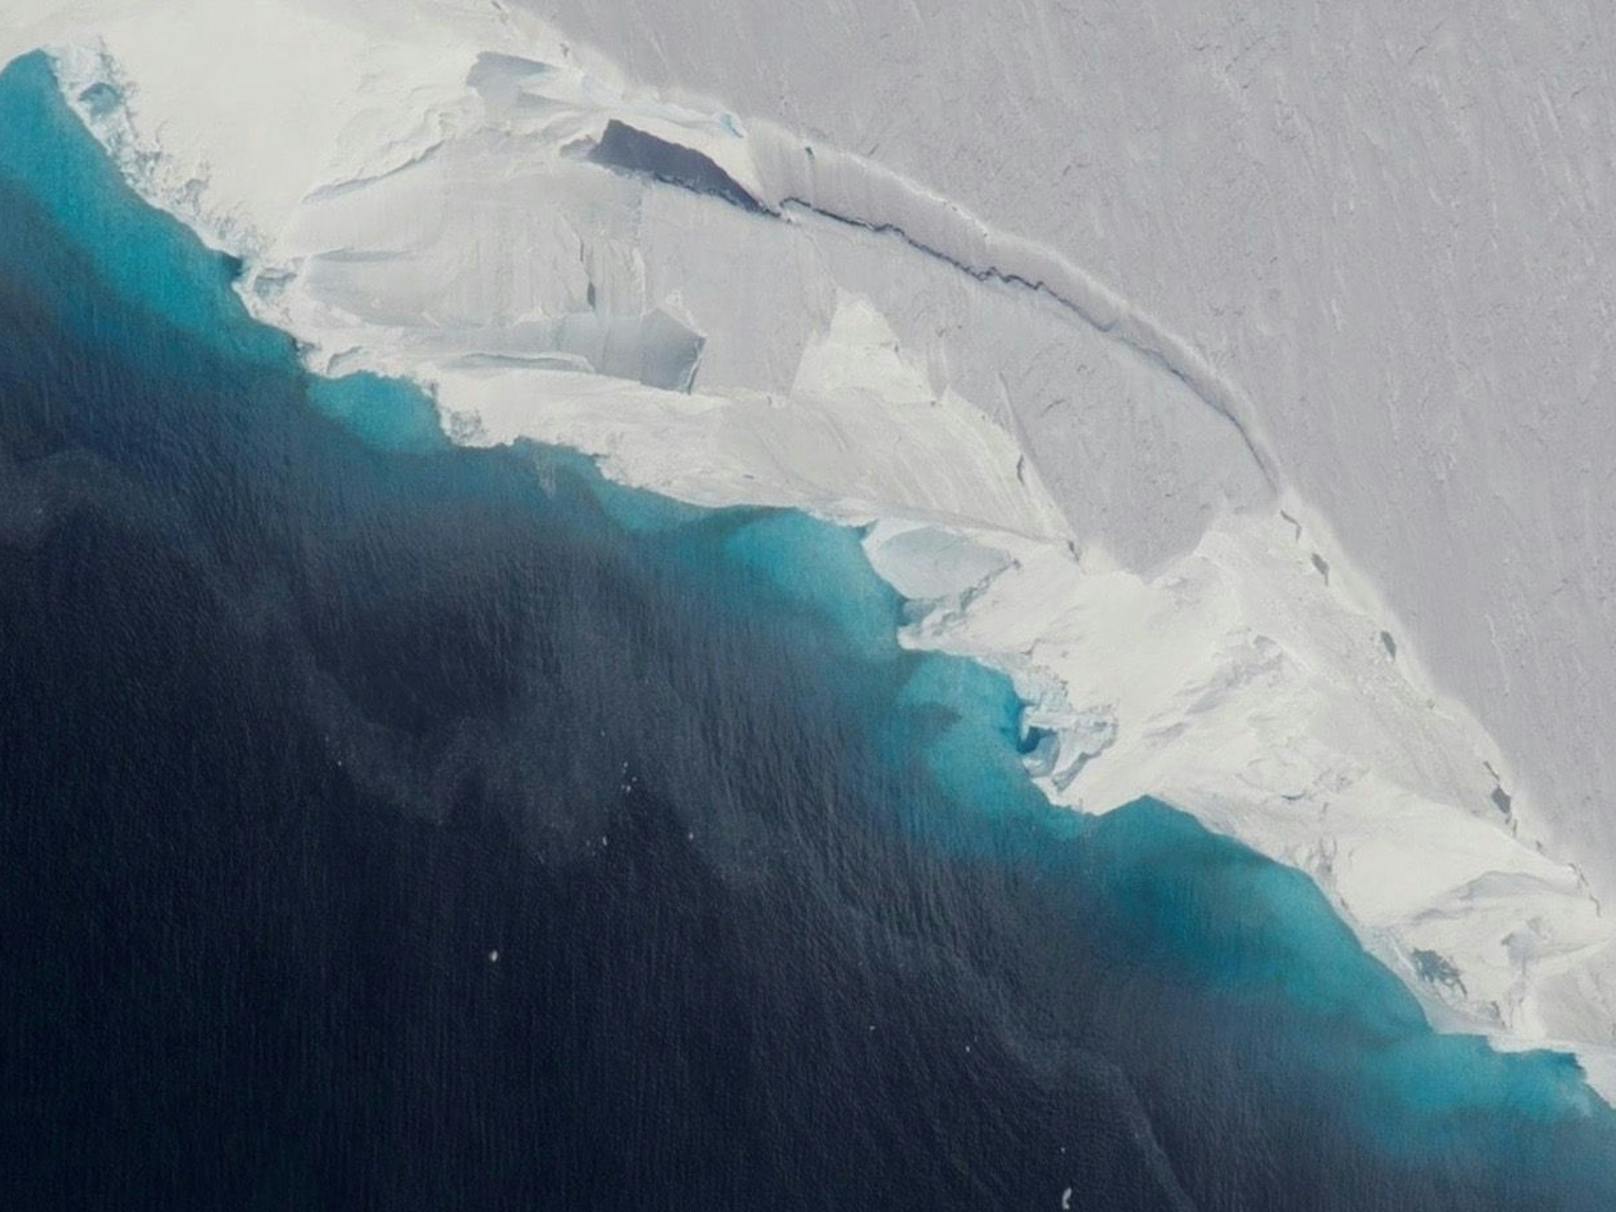 In der Antarktis droht der Thwaites-Gletscher, eine riesige Eismasse – von der Größe Tschechiens, Österreich und der Schweiz zusammengenommen – zu zerbrechen. Wenn der Gletscher auseinanderfällt, ist zu erwarten, dass große Teile der Eismassen als Schmelzwasser viel schneller als ursprünglich angenommen ins Meer fließen.